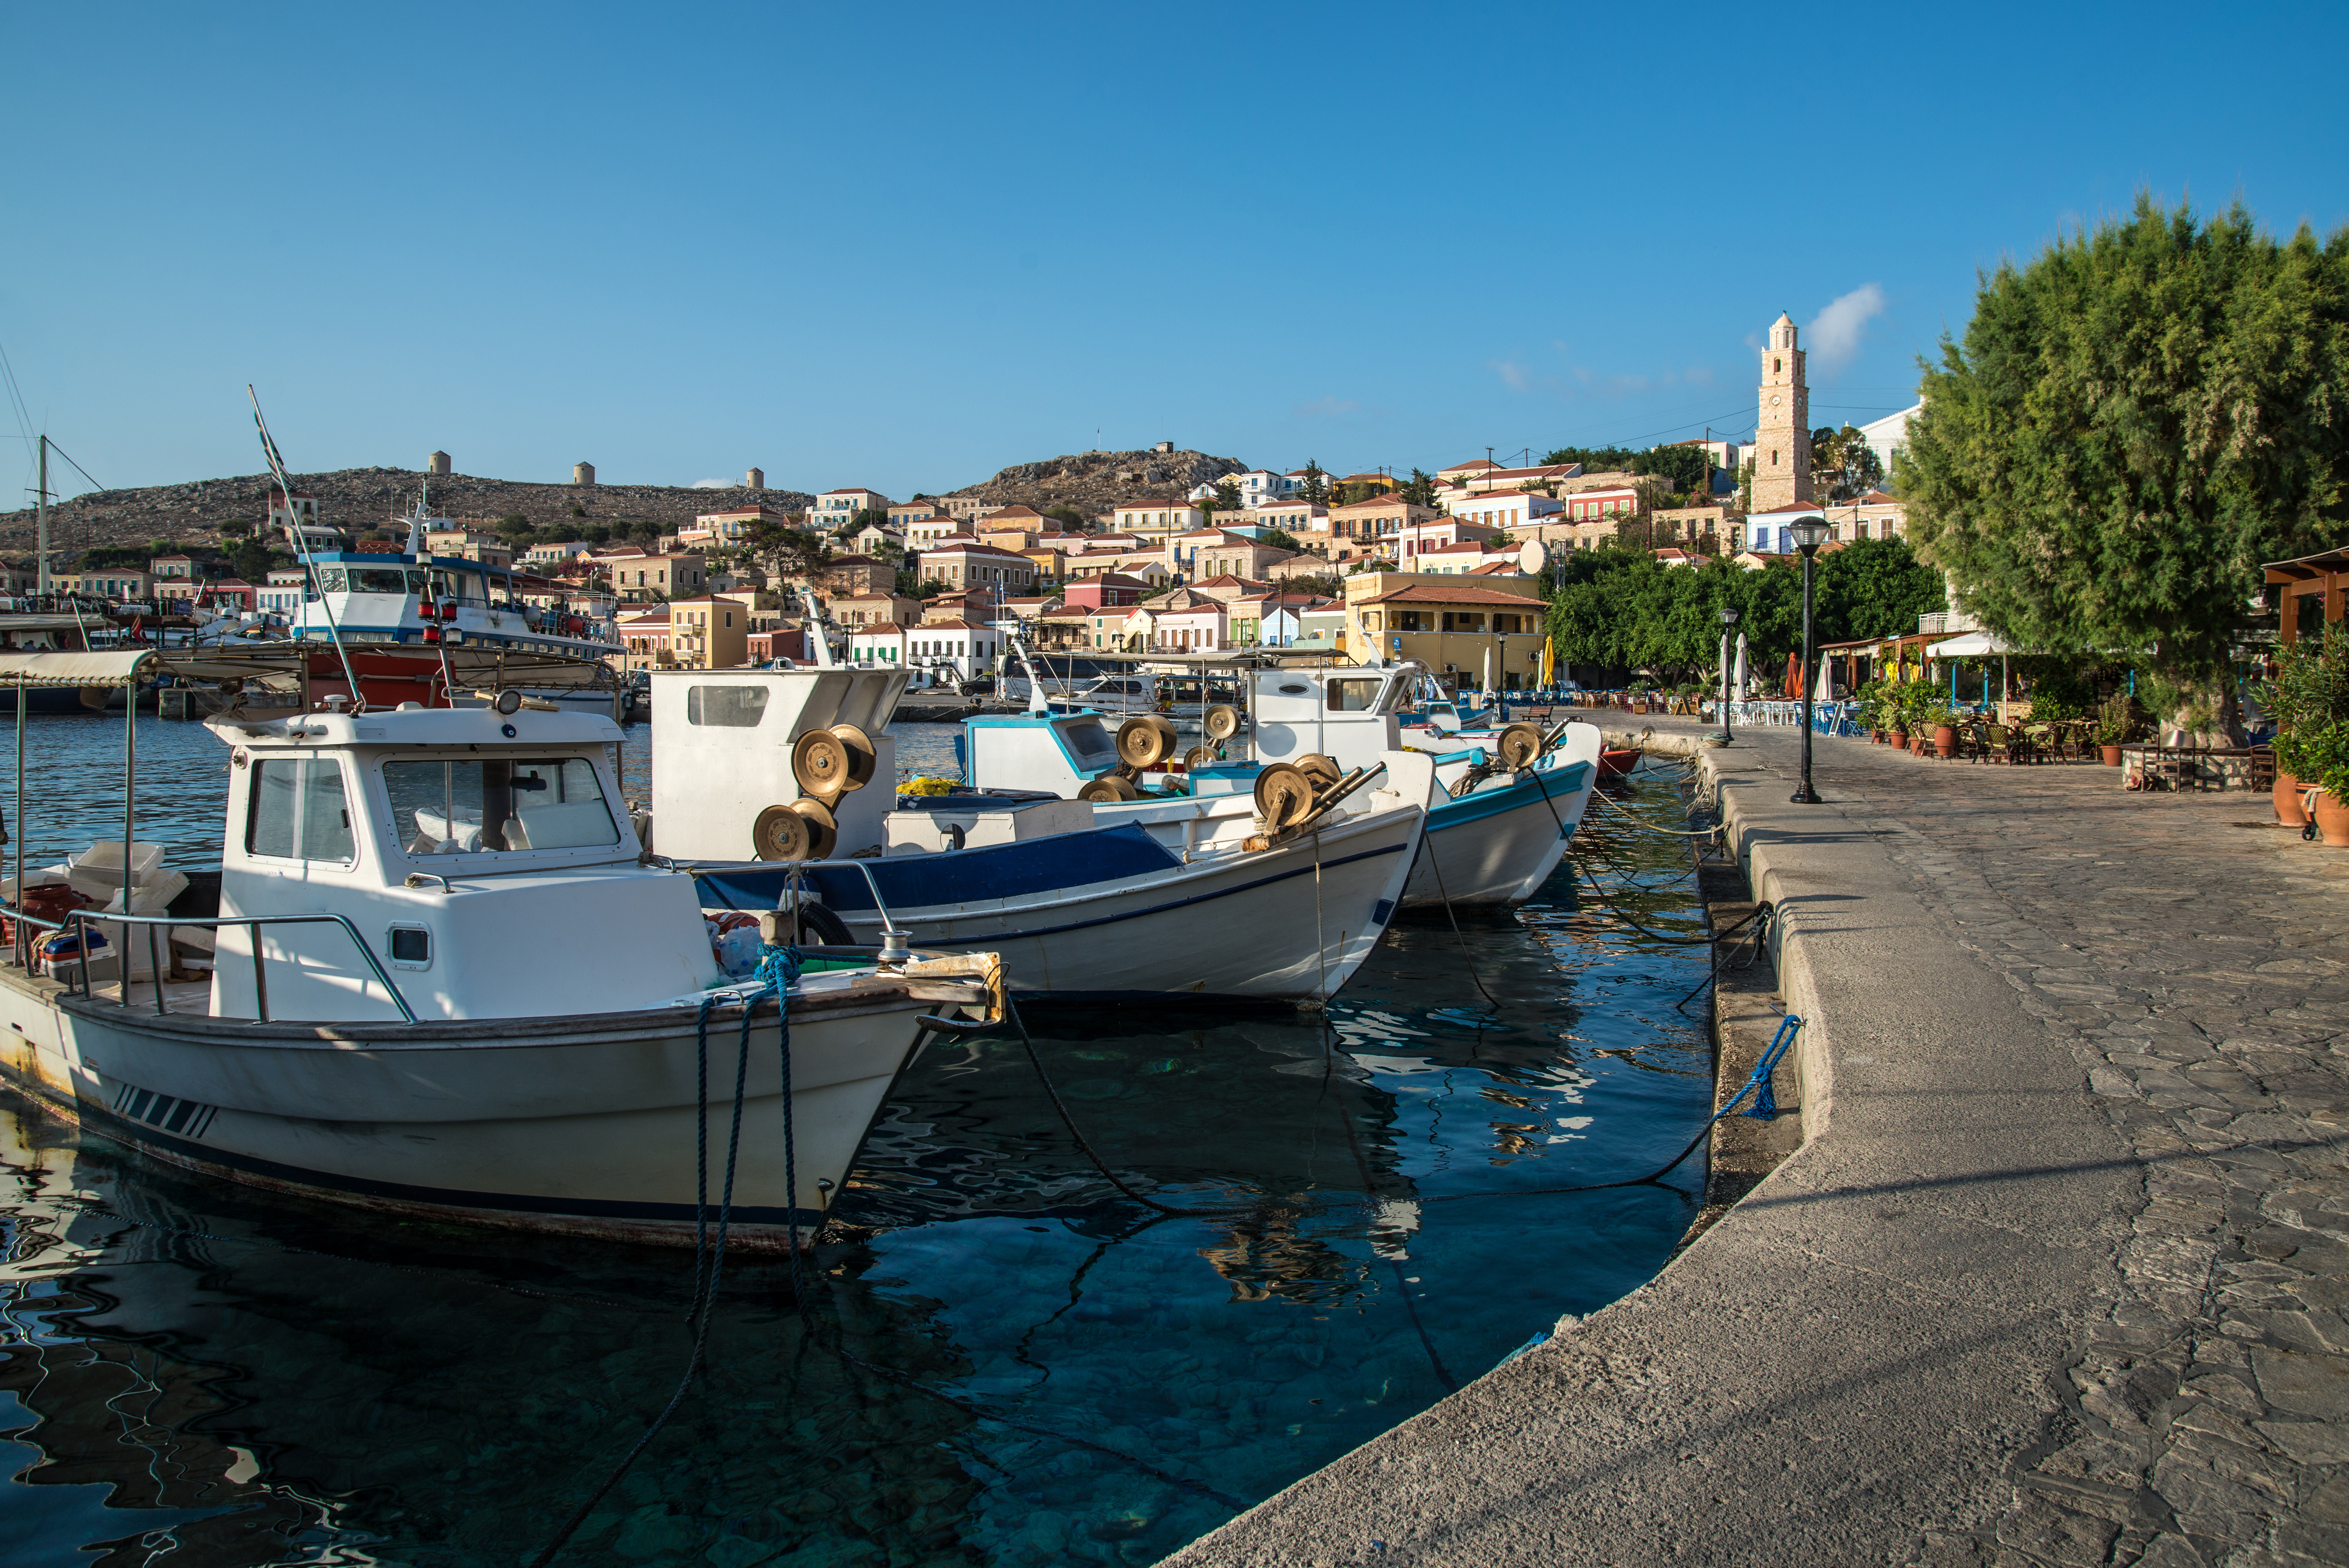 Гръцките острови са популярна туристическа дестинация, която обаче търпи загуби през тази година